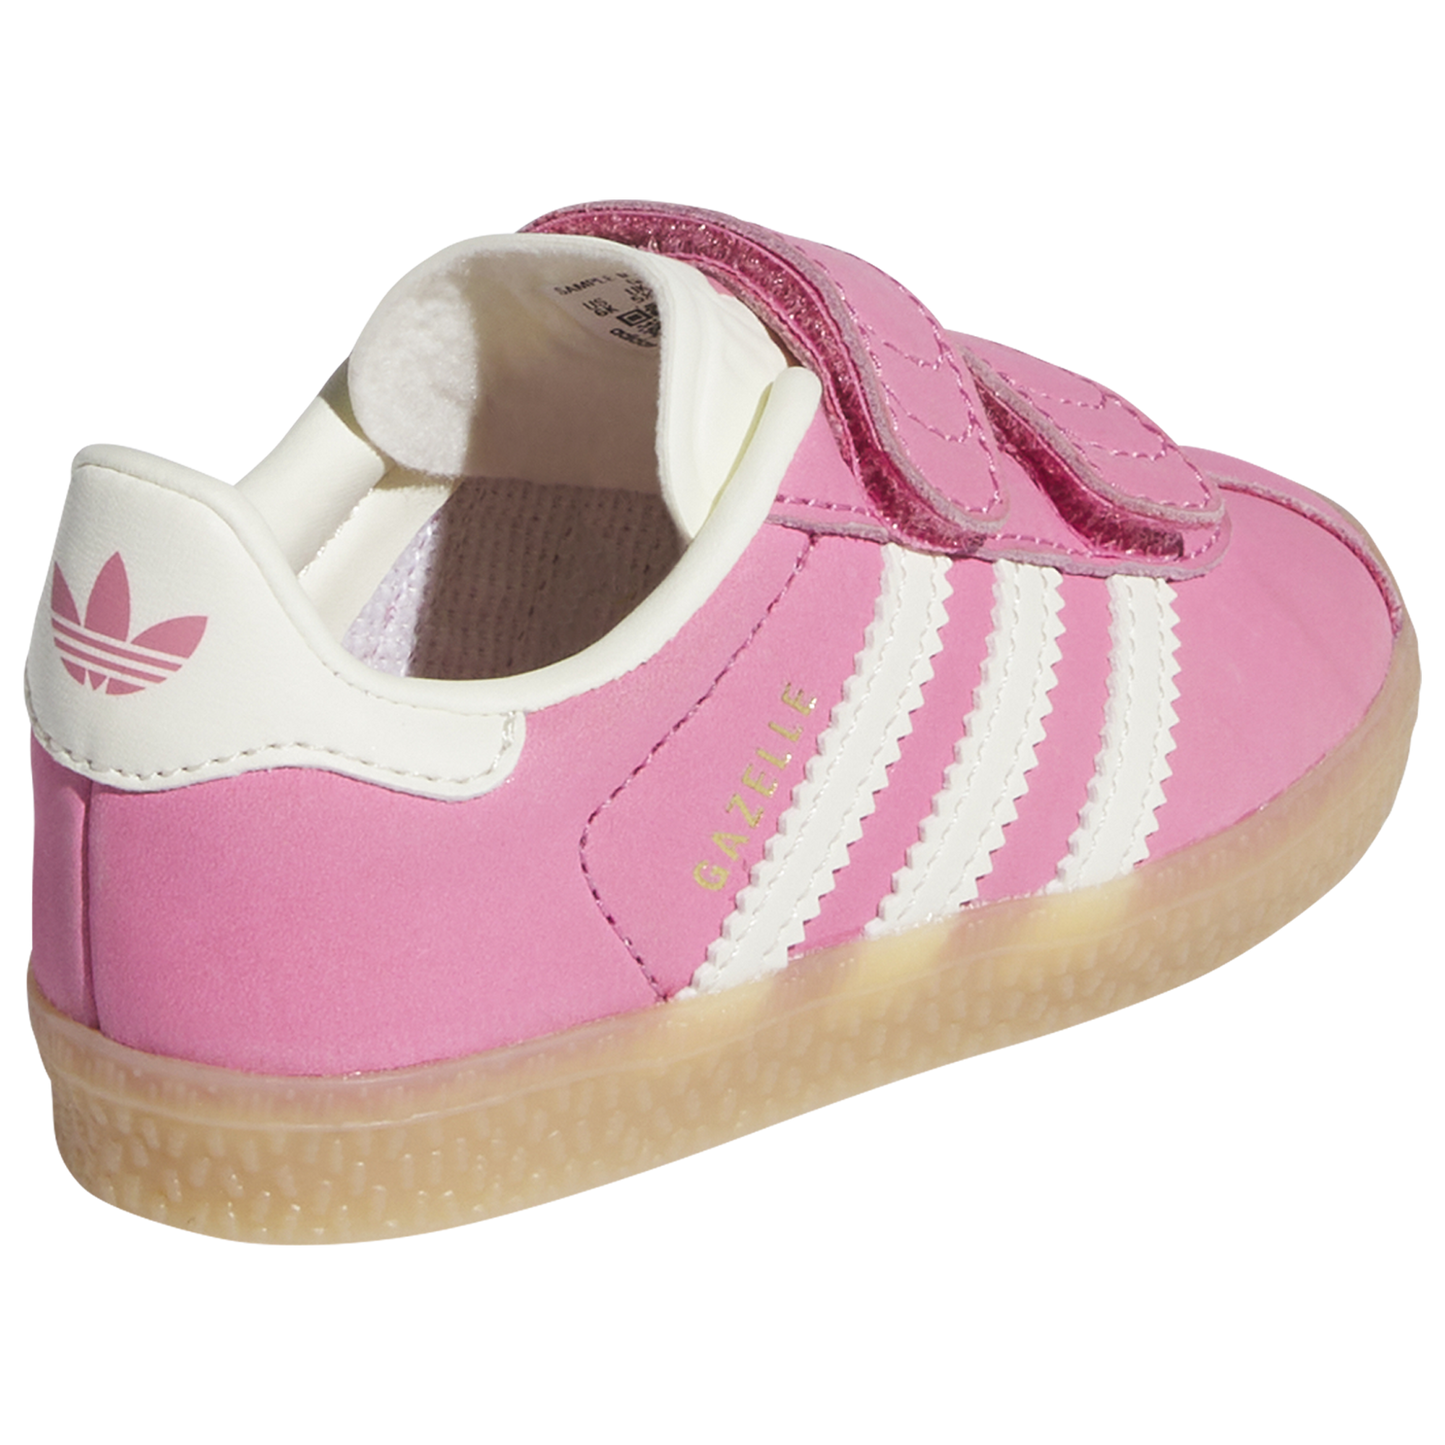 Adidas Gazelle Pink - Toddler